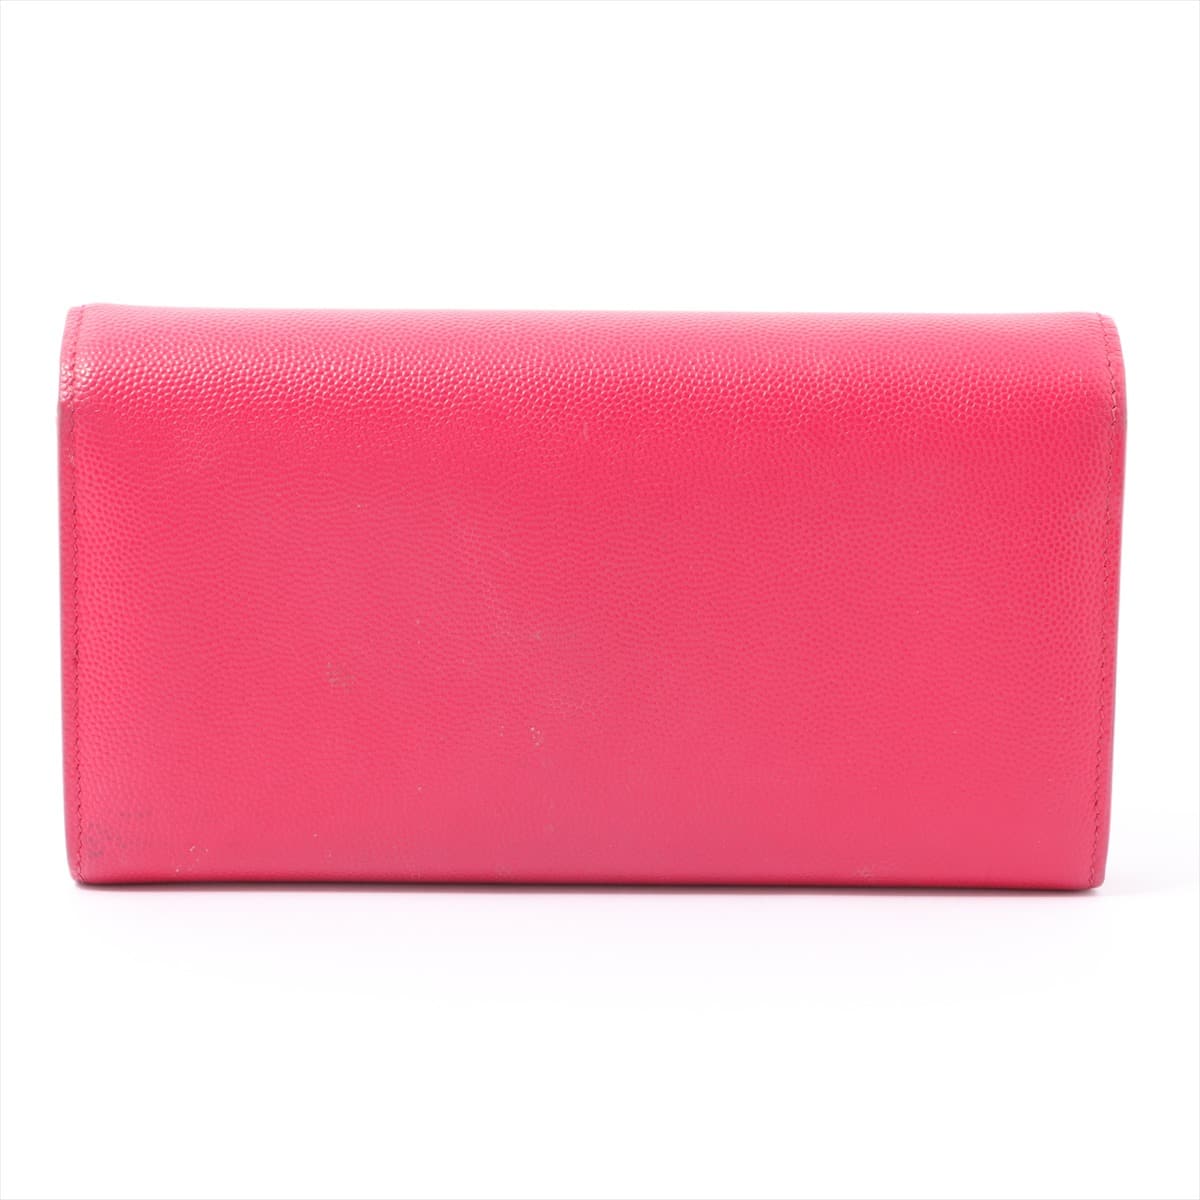 Saint Laurent Paris Logo GNC372266 Leather Wallet Pink